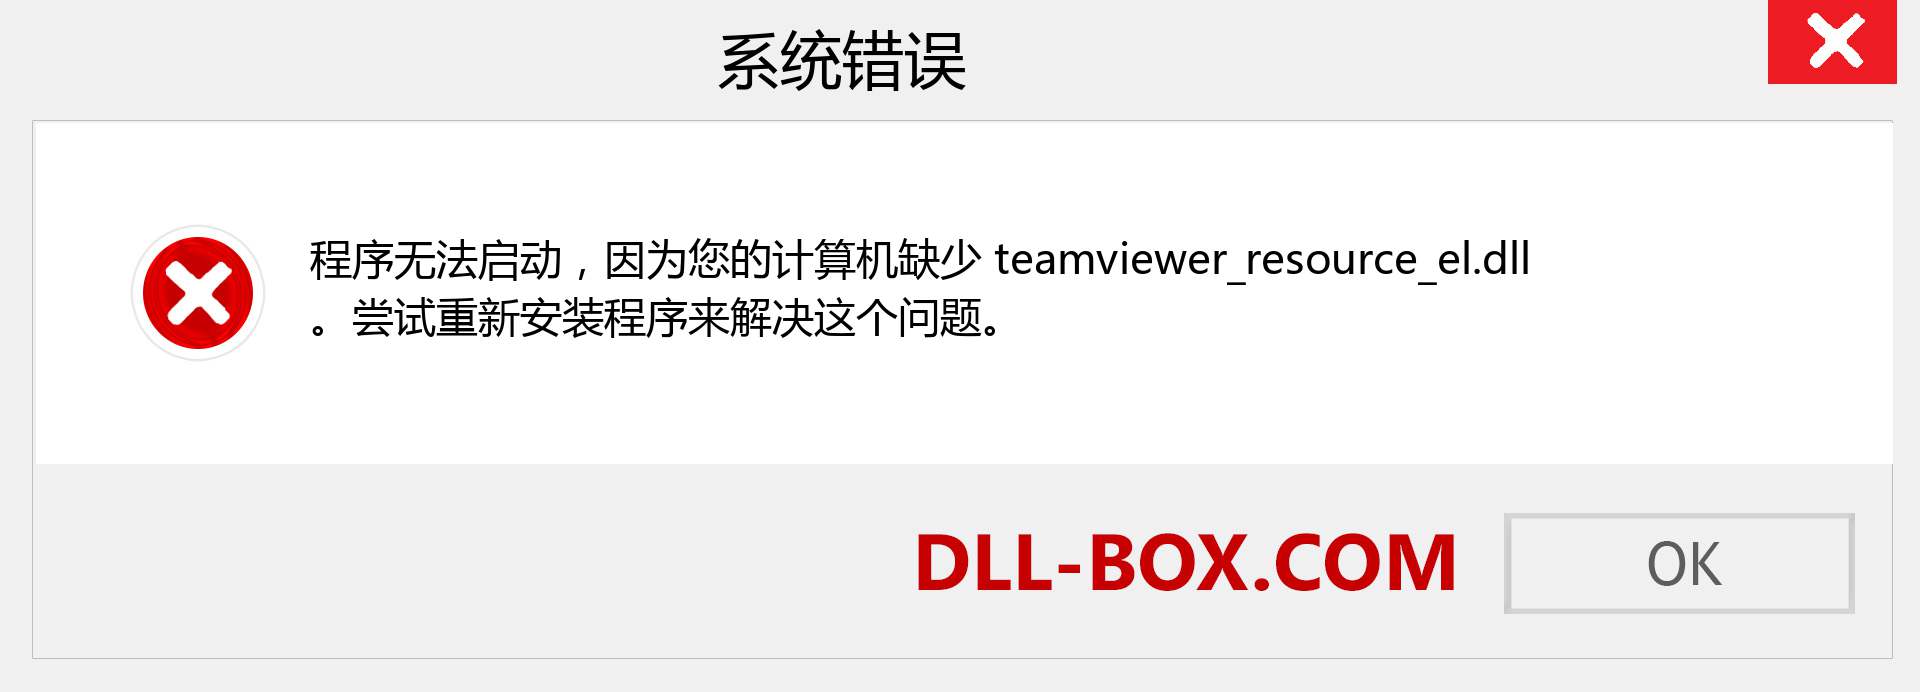 teamviewer_resource_el.dll 文件丢失？。 适用于 Windows 7、8、10 的下载 - 修复 Windows、照片、图像上的 teamviewer_resource_el dll 丢失错误